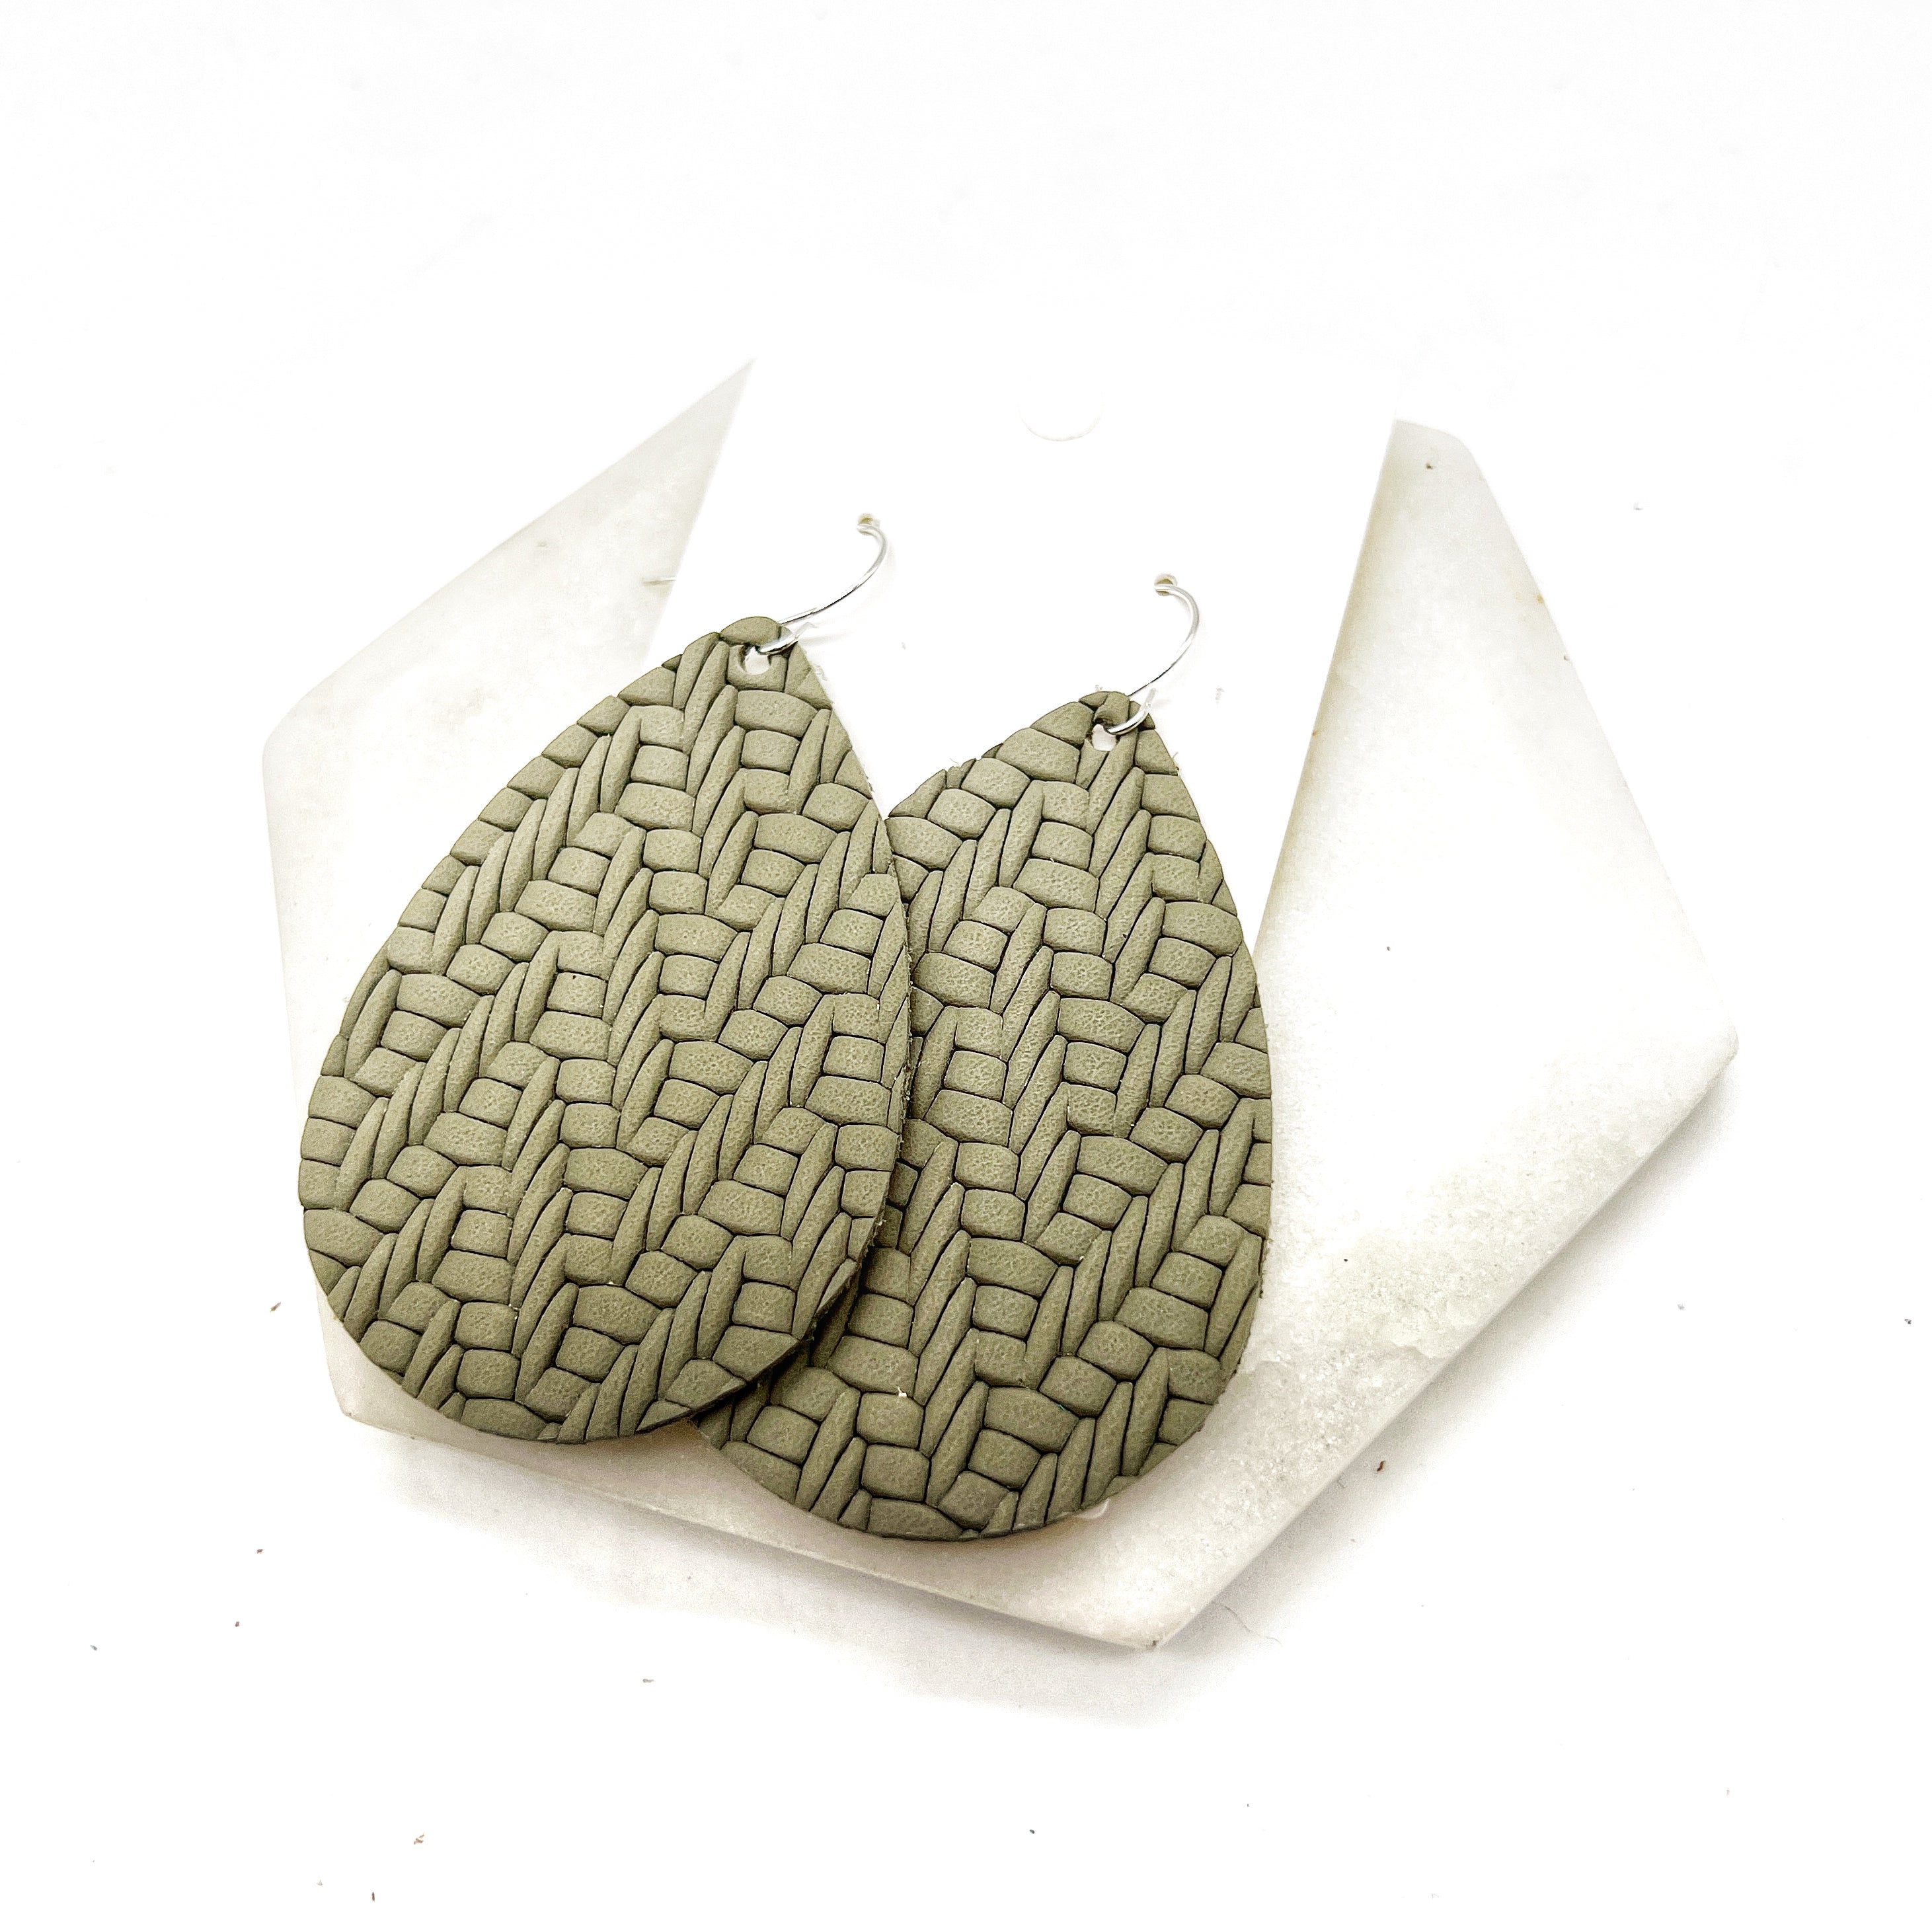 Olive Green Knit Leather Teardrop Earrings